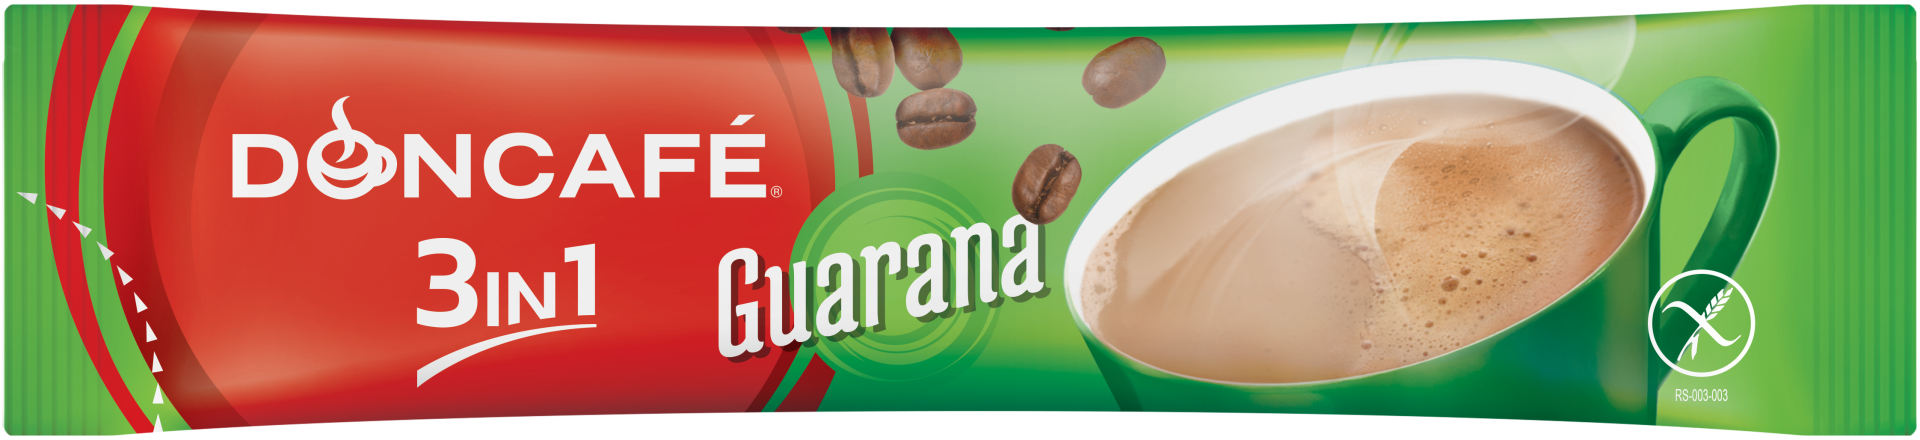 doncafe guarana